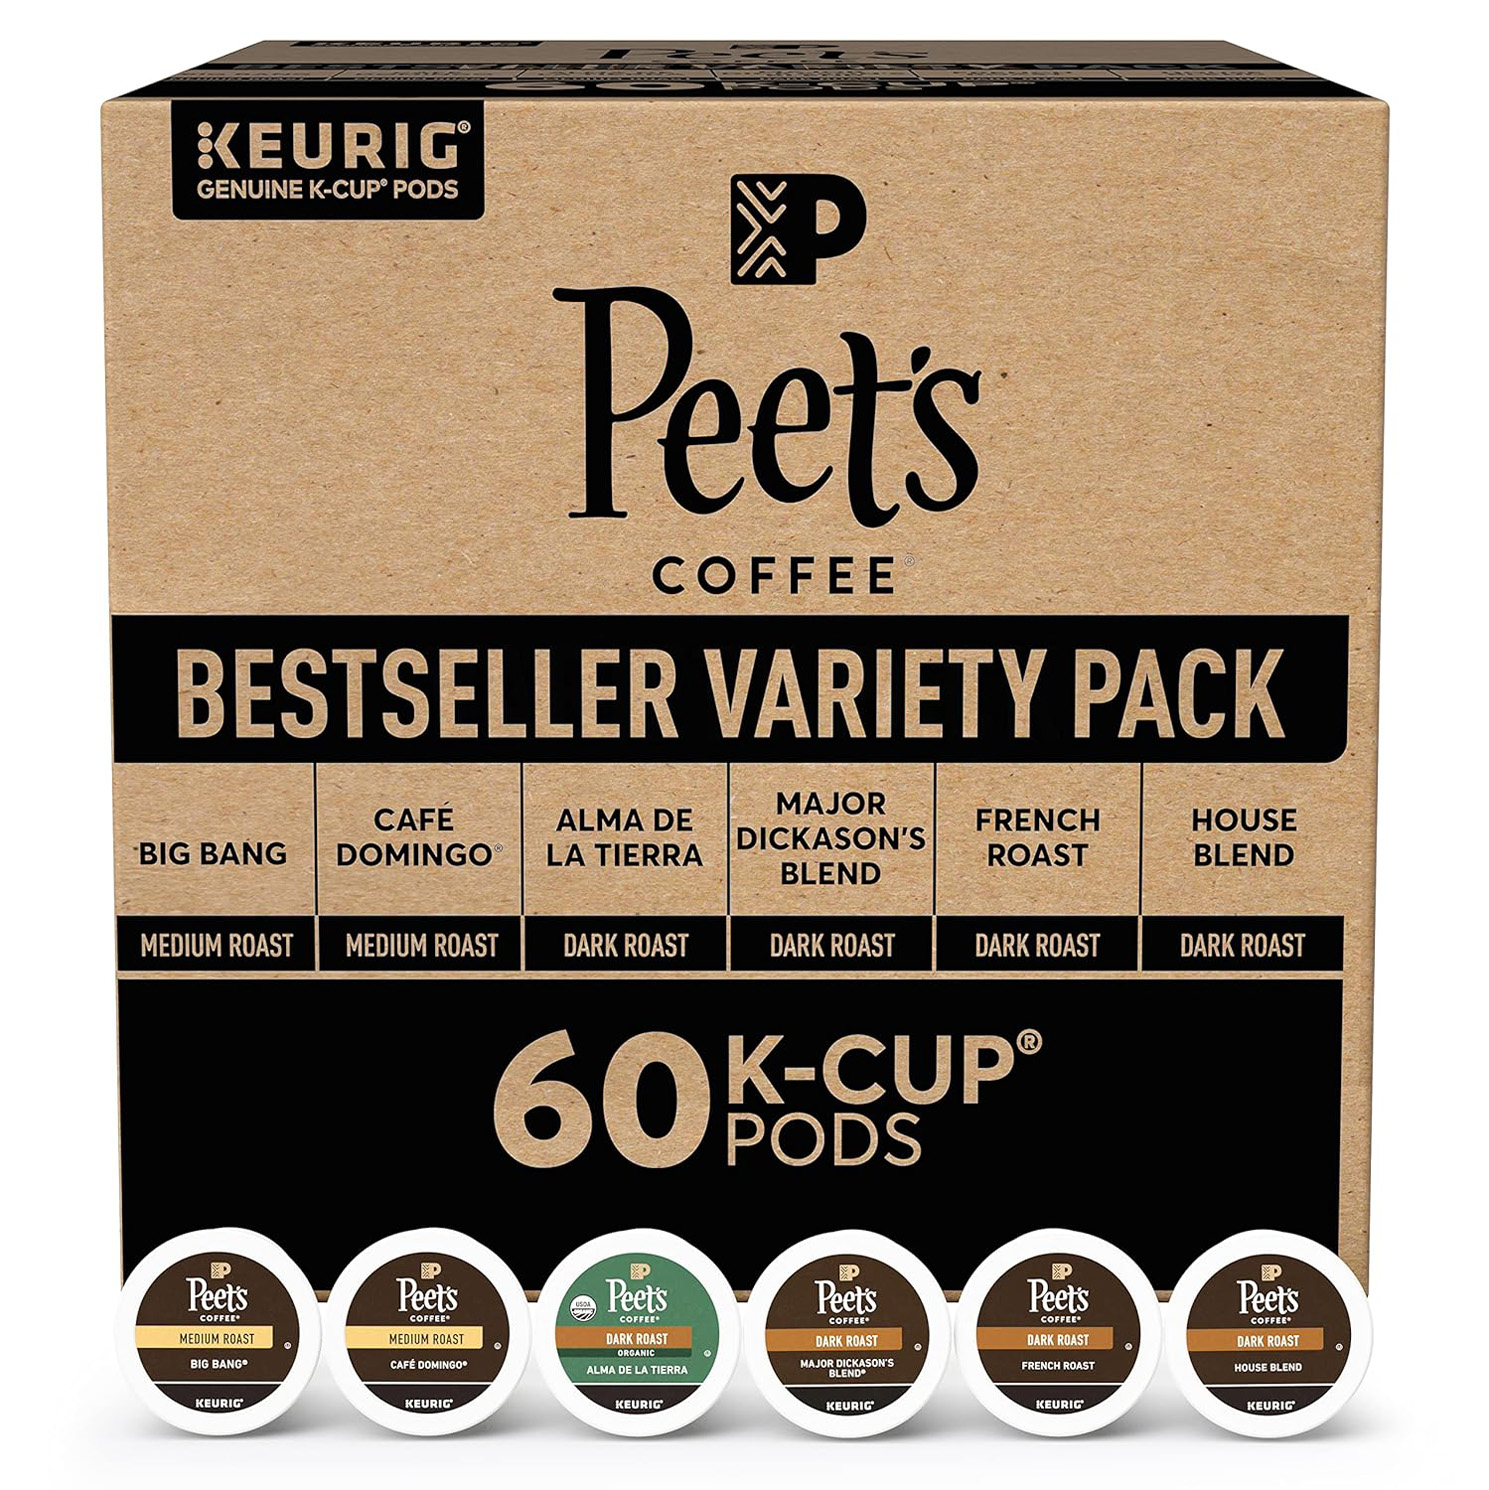 Peet’s Coffee, Bestseller’s Variety Pack Keurig Coffee Pods, House Blend 60 Count